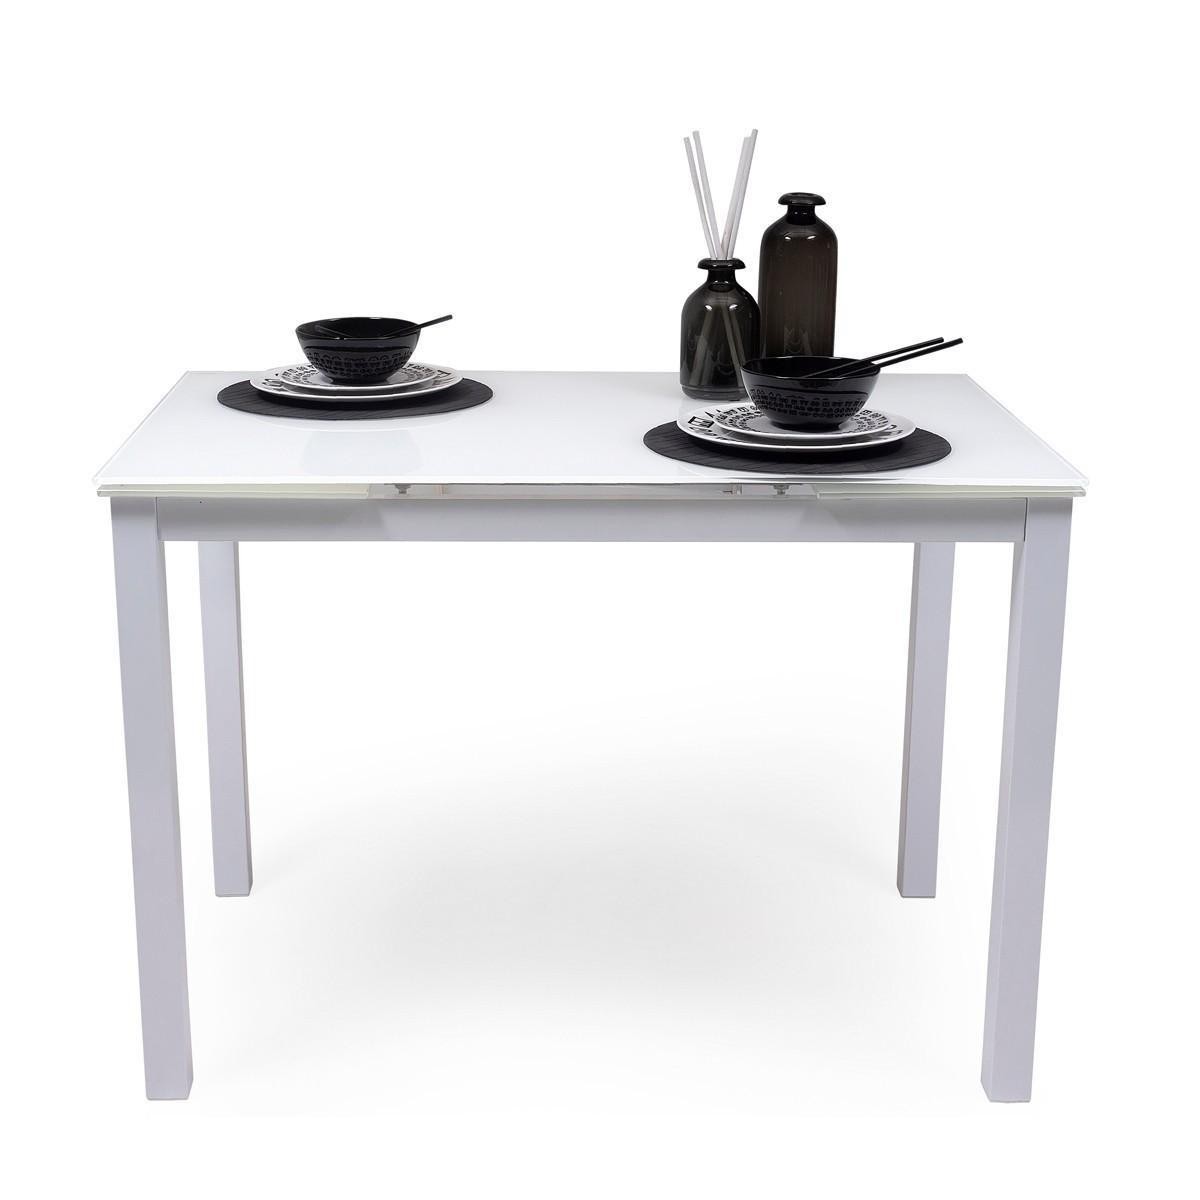 Mesa de cocina extensible con tapa de cristal blanco I